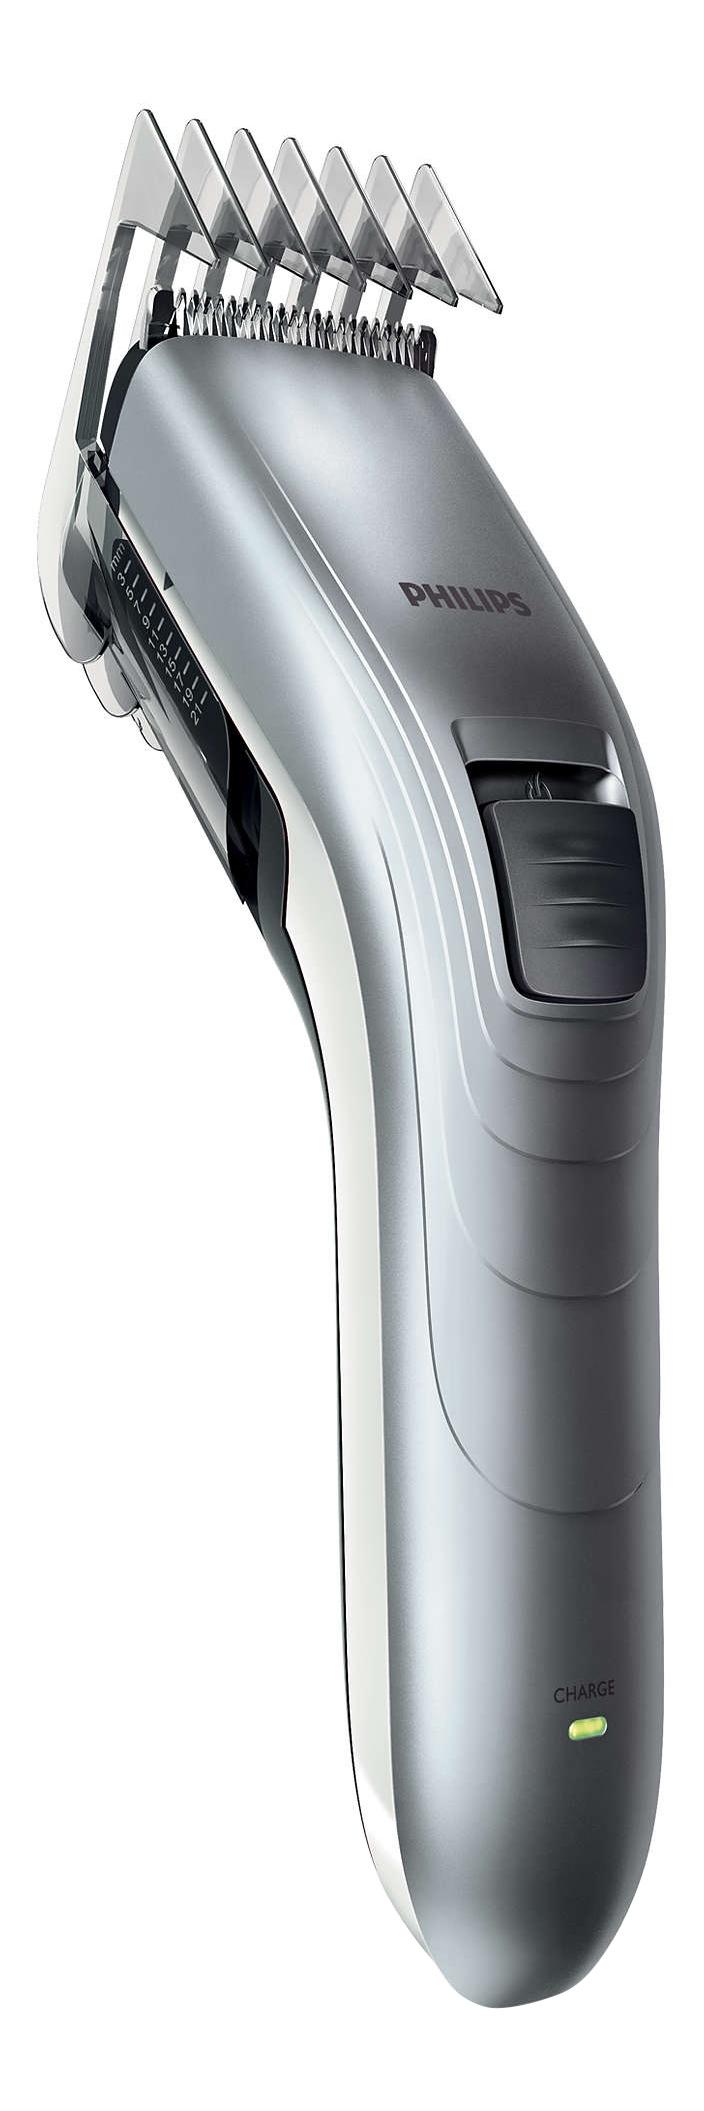 Машинка для стрижки волос Philips Series 3000 QC5130/ 15 машинка для стрижки волос philips series 3000 qc5130 15